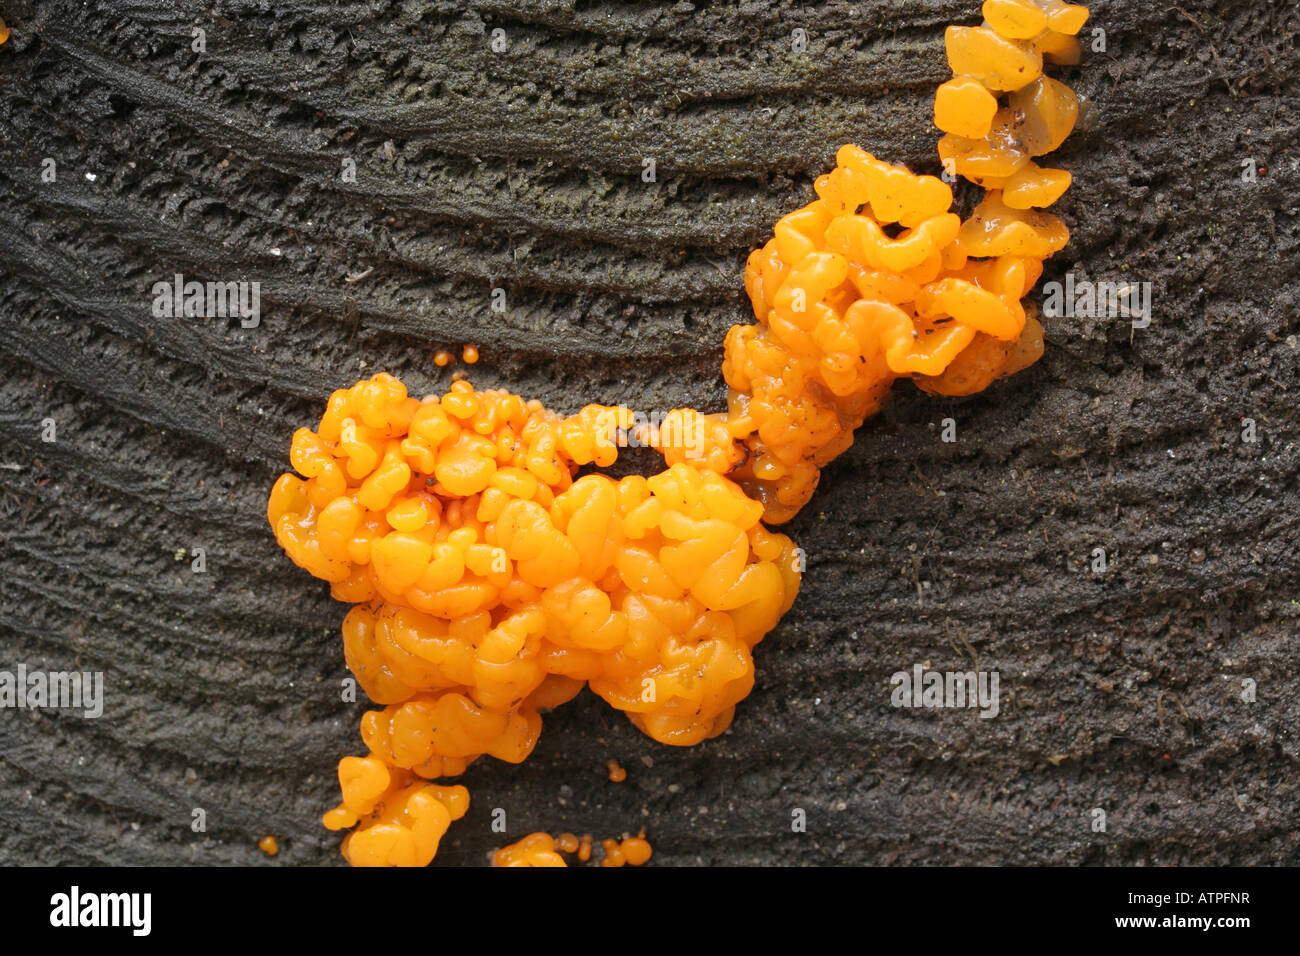 Orange jelly fungus, Dacrymyces palmatus Stock Photo